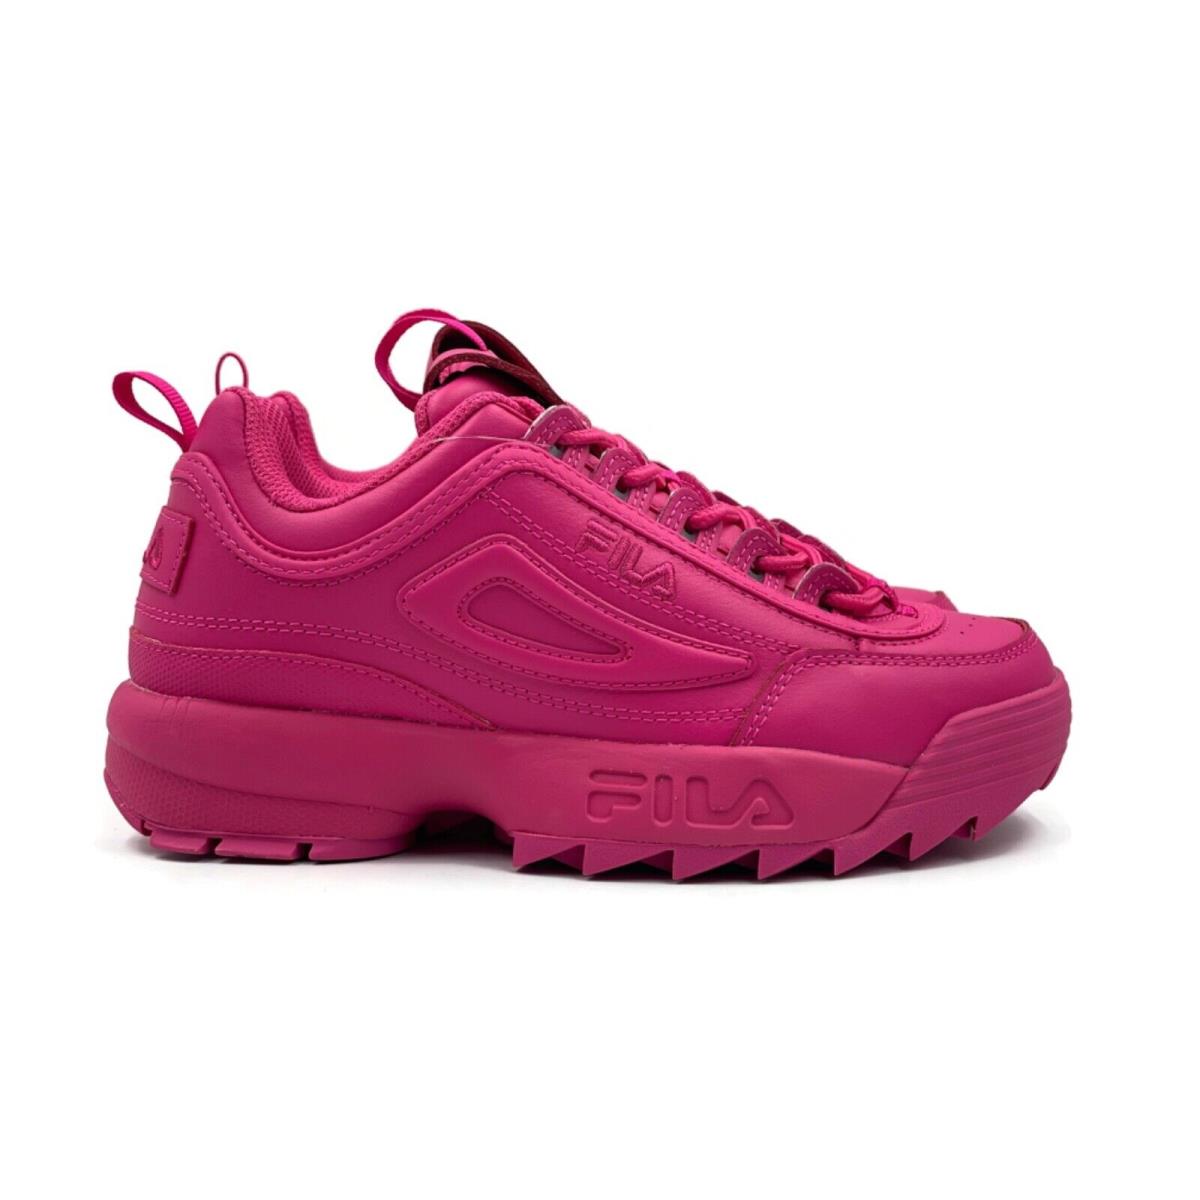 Fila Disruptor 2 II Premium Women Casual Platform Shoe Neon Pink Sneaker Trainer - Pink